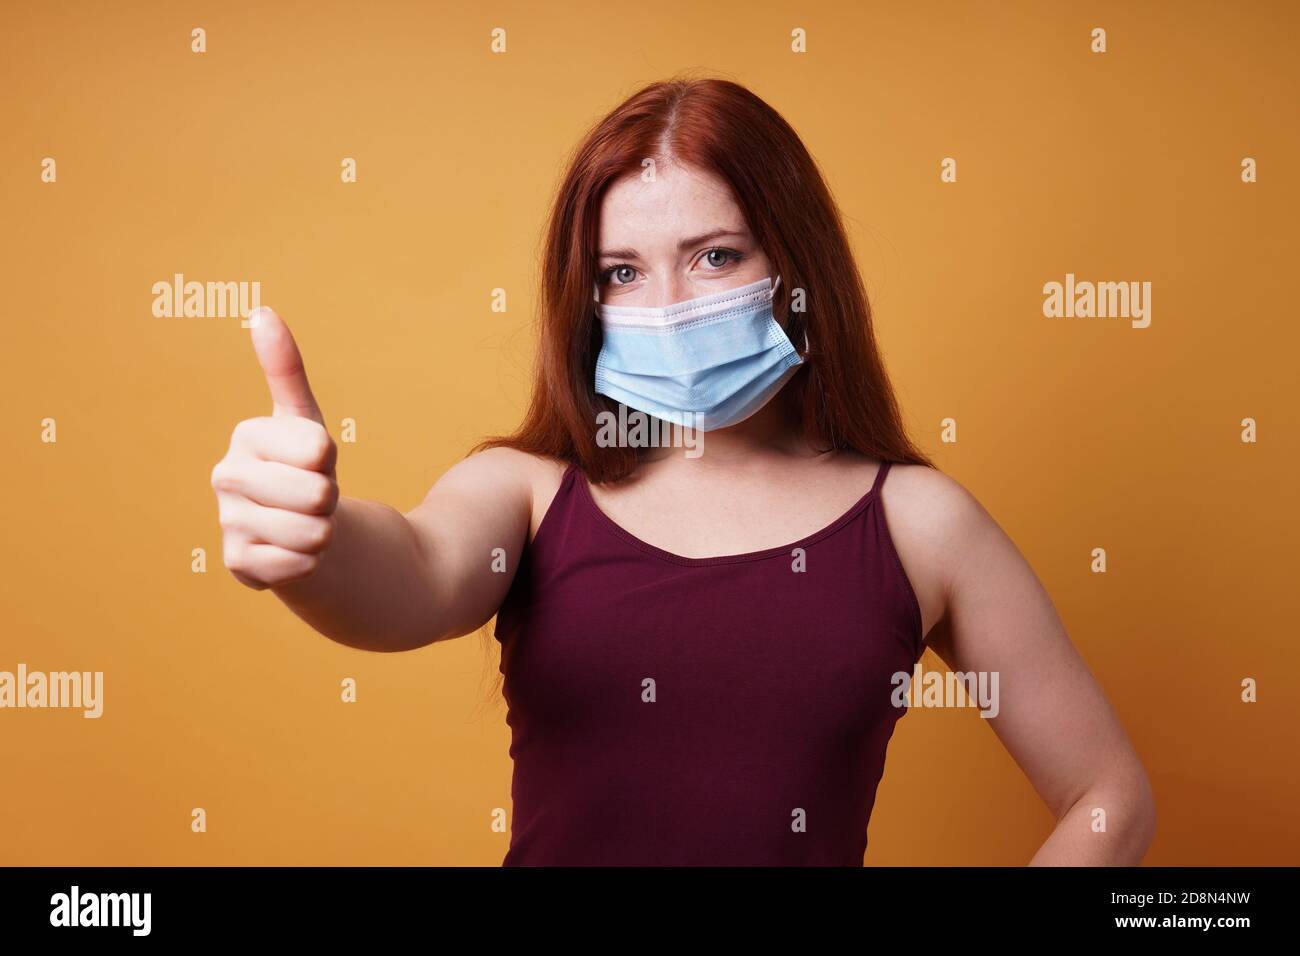 Junge Frau trägt eine medizinische Gesichtsmaske richtig bedeckt Mund Und Nase und geben Daumen hoch - Schutz gegen Corona Virus - Studio Portrait auf orangenen Hintergrund mit Kopie Platz Stockfoto